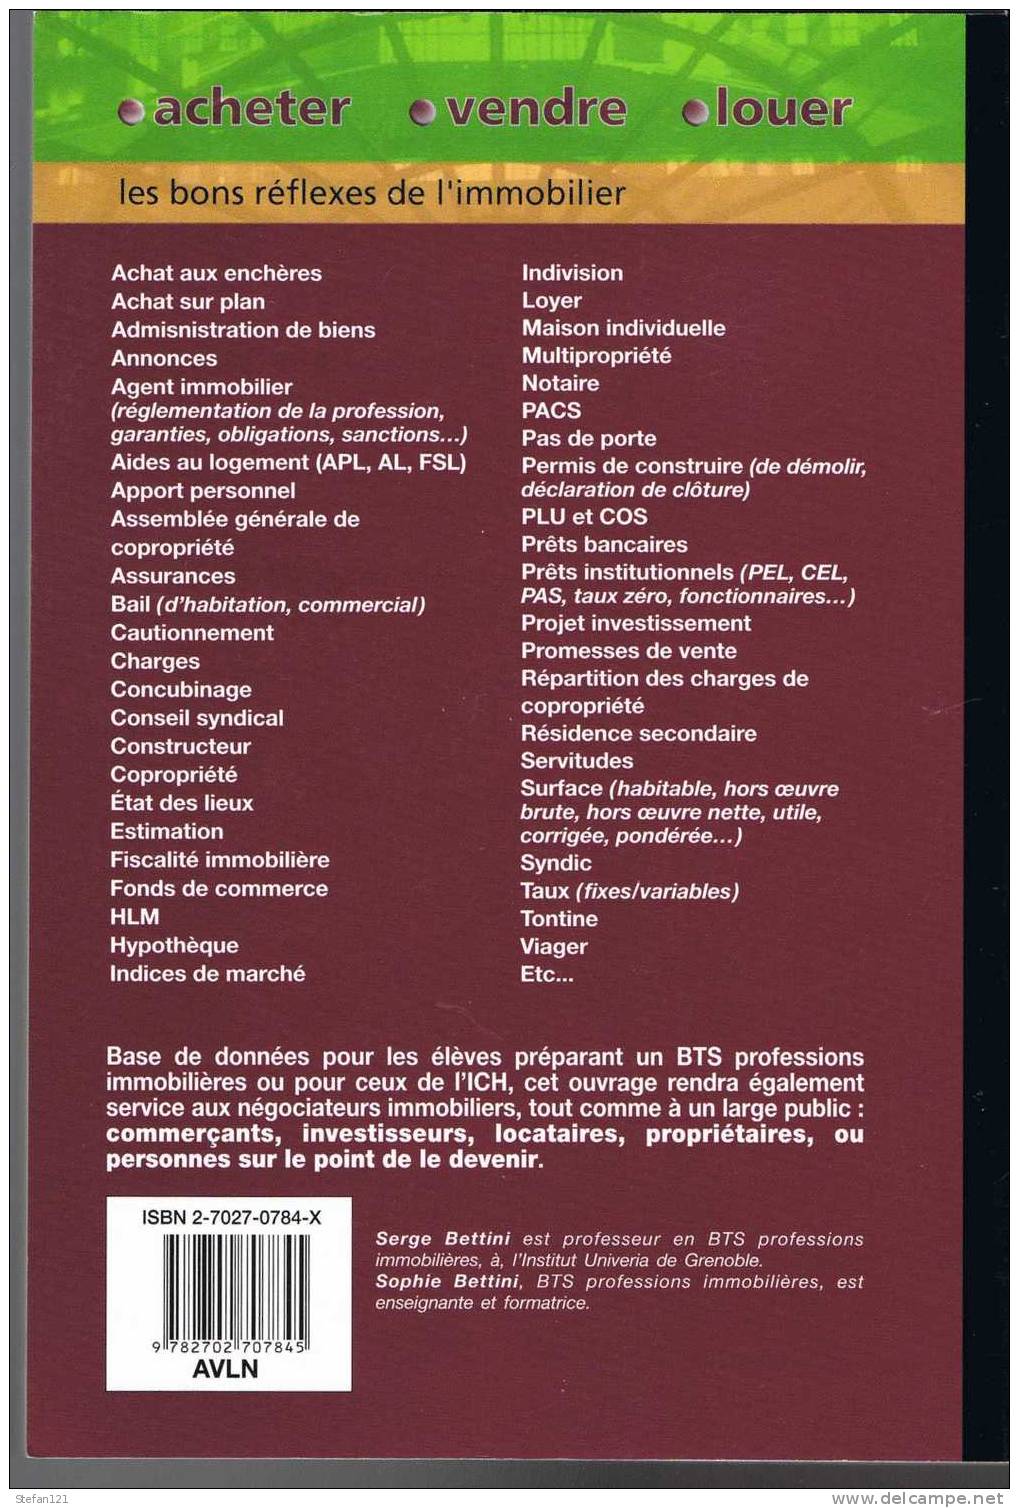 Acheter, Vendre, Louer - Sophie Et Serge Bettini - 2003 - Editeur Chiron - 288 Pages - 24 Cm X 17 Cm -- - Derecho